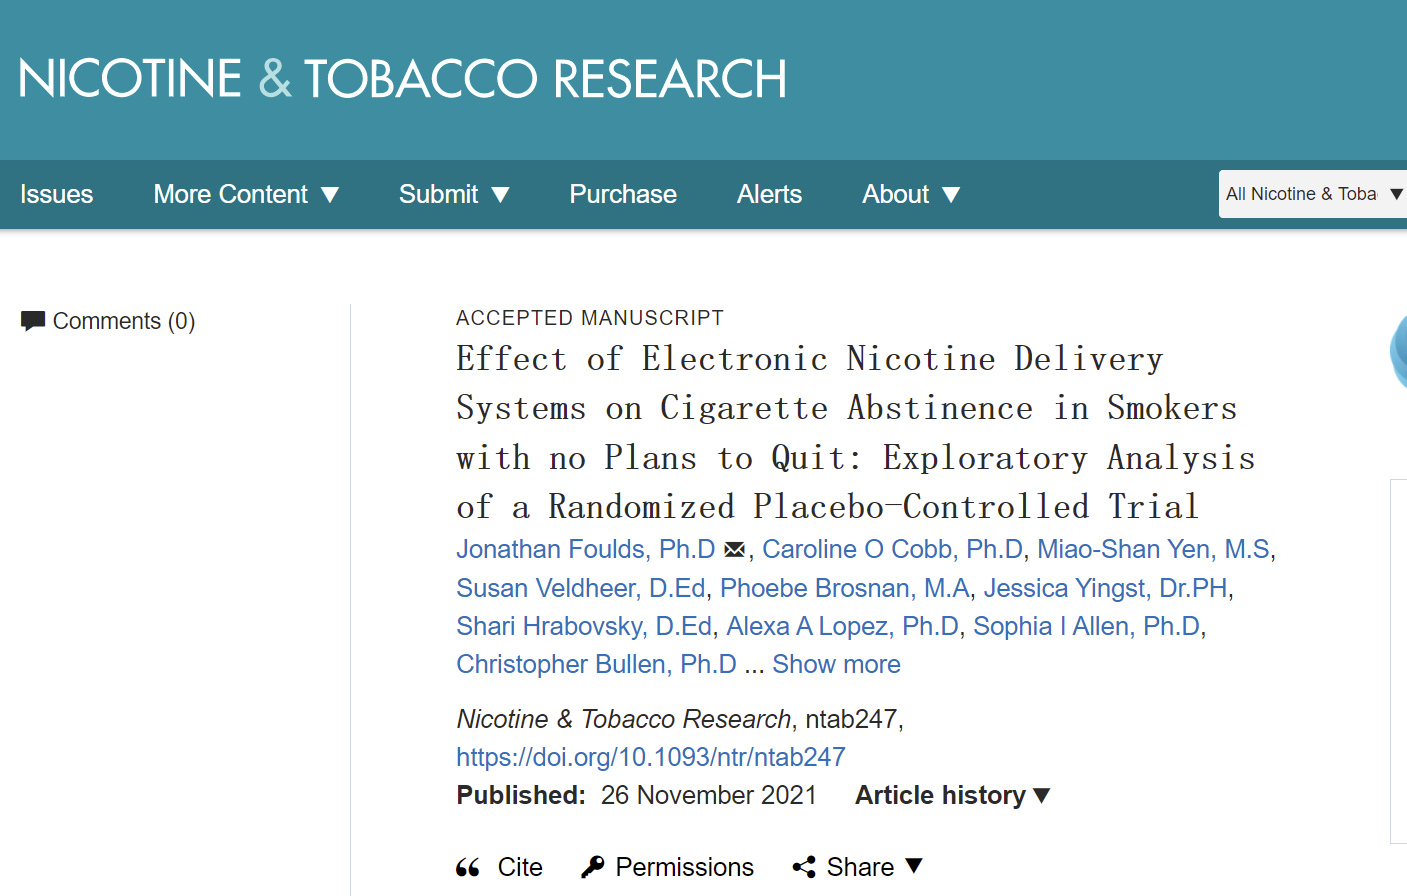 图注：报告发布在尼古丁与烟草研究协会的官方期刊上。